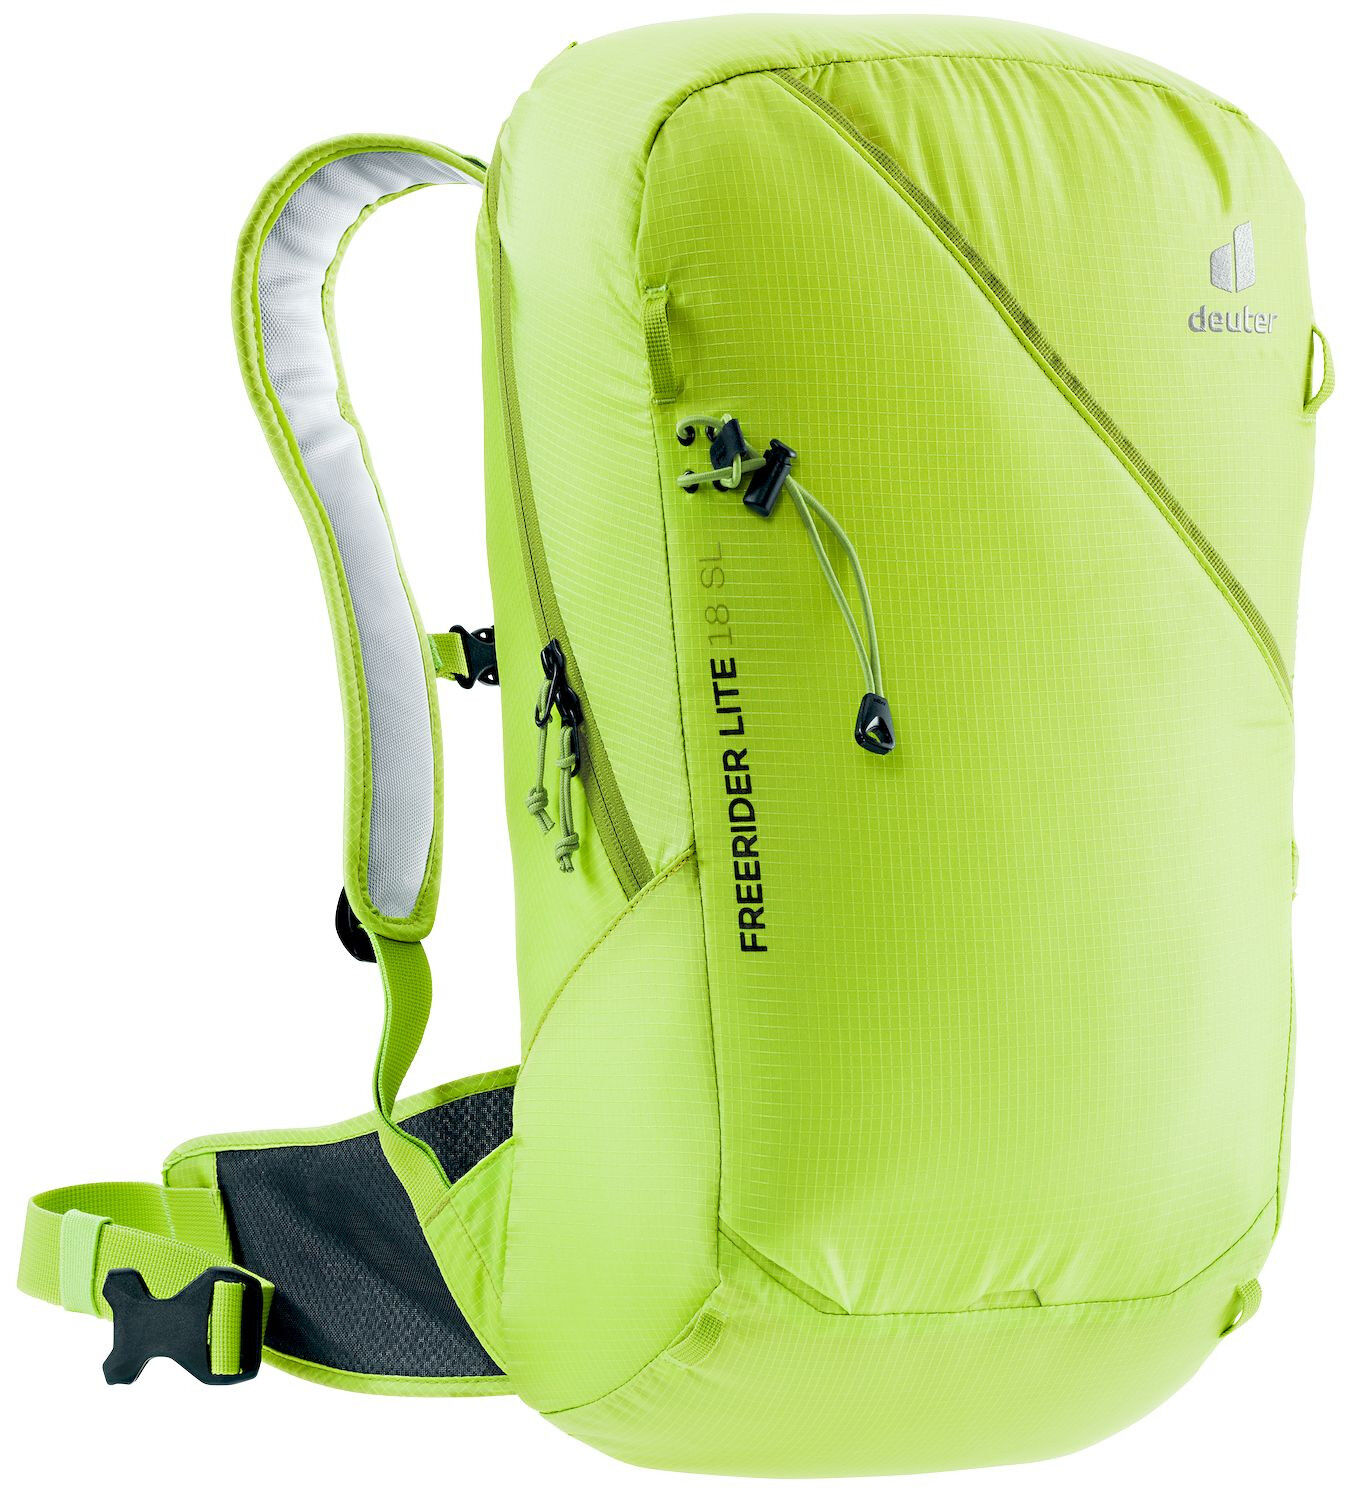 Deuter Freerider Lite 18 SL - Ski touring backpack - Women's